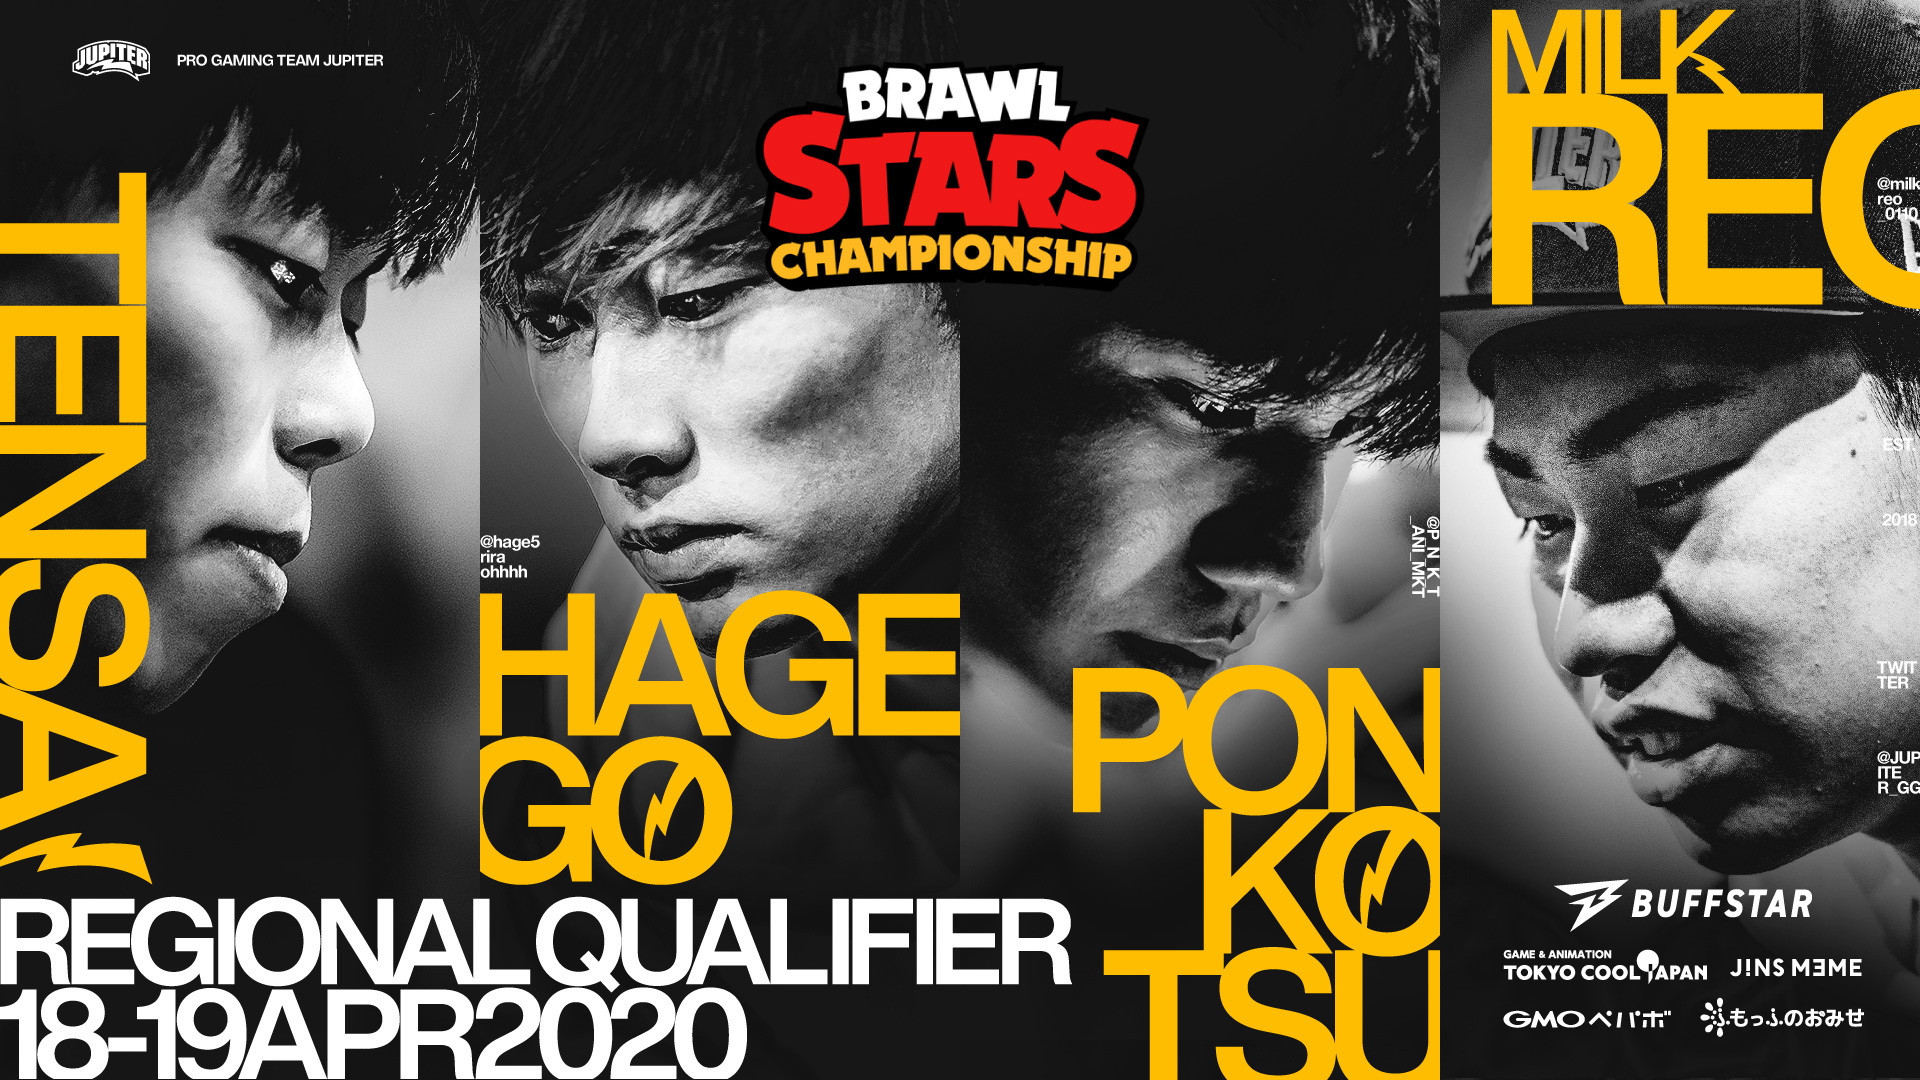 ブロスタ –  『Brawl Stars Championship』Regional Online Qualifier April Japan 結果報告 3位